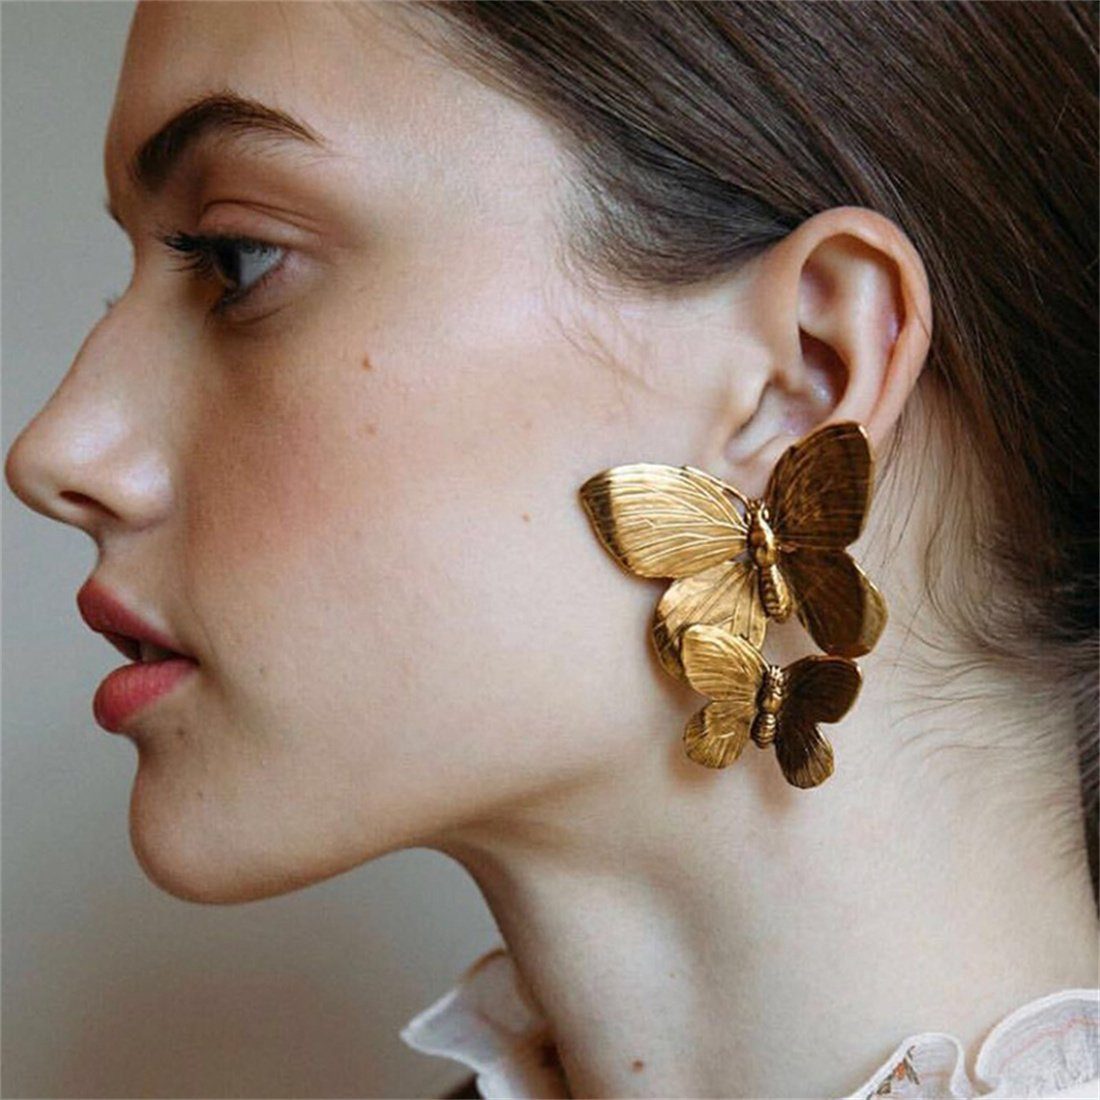 zwei Ohrringe Ohrringe, DÖRÖY modische Metall Schmetterling von Ohrstecker Satz Damen Paar